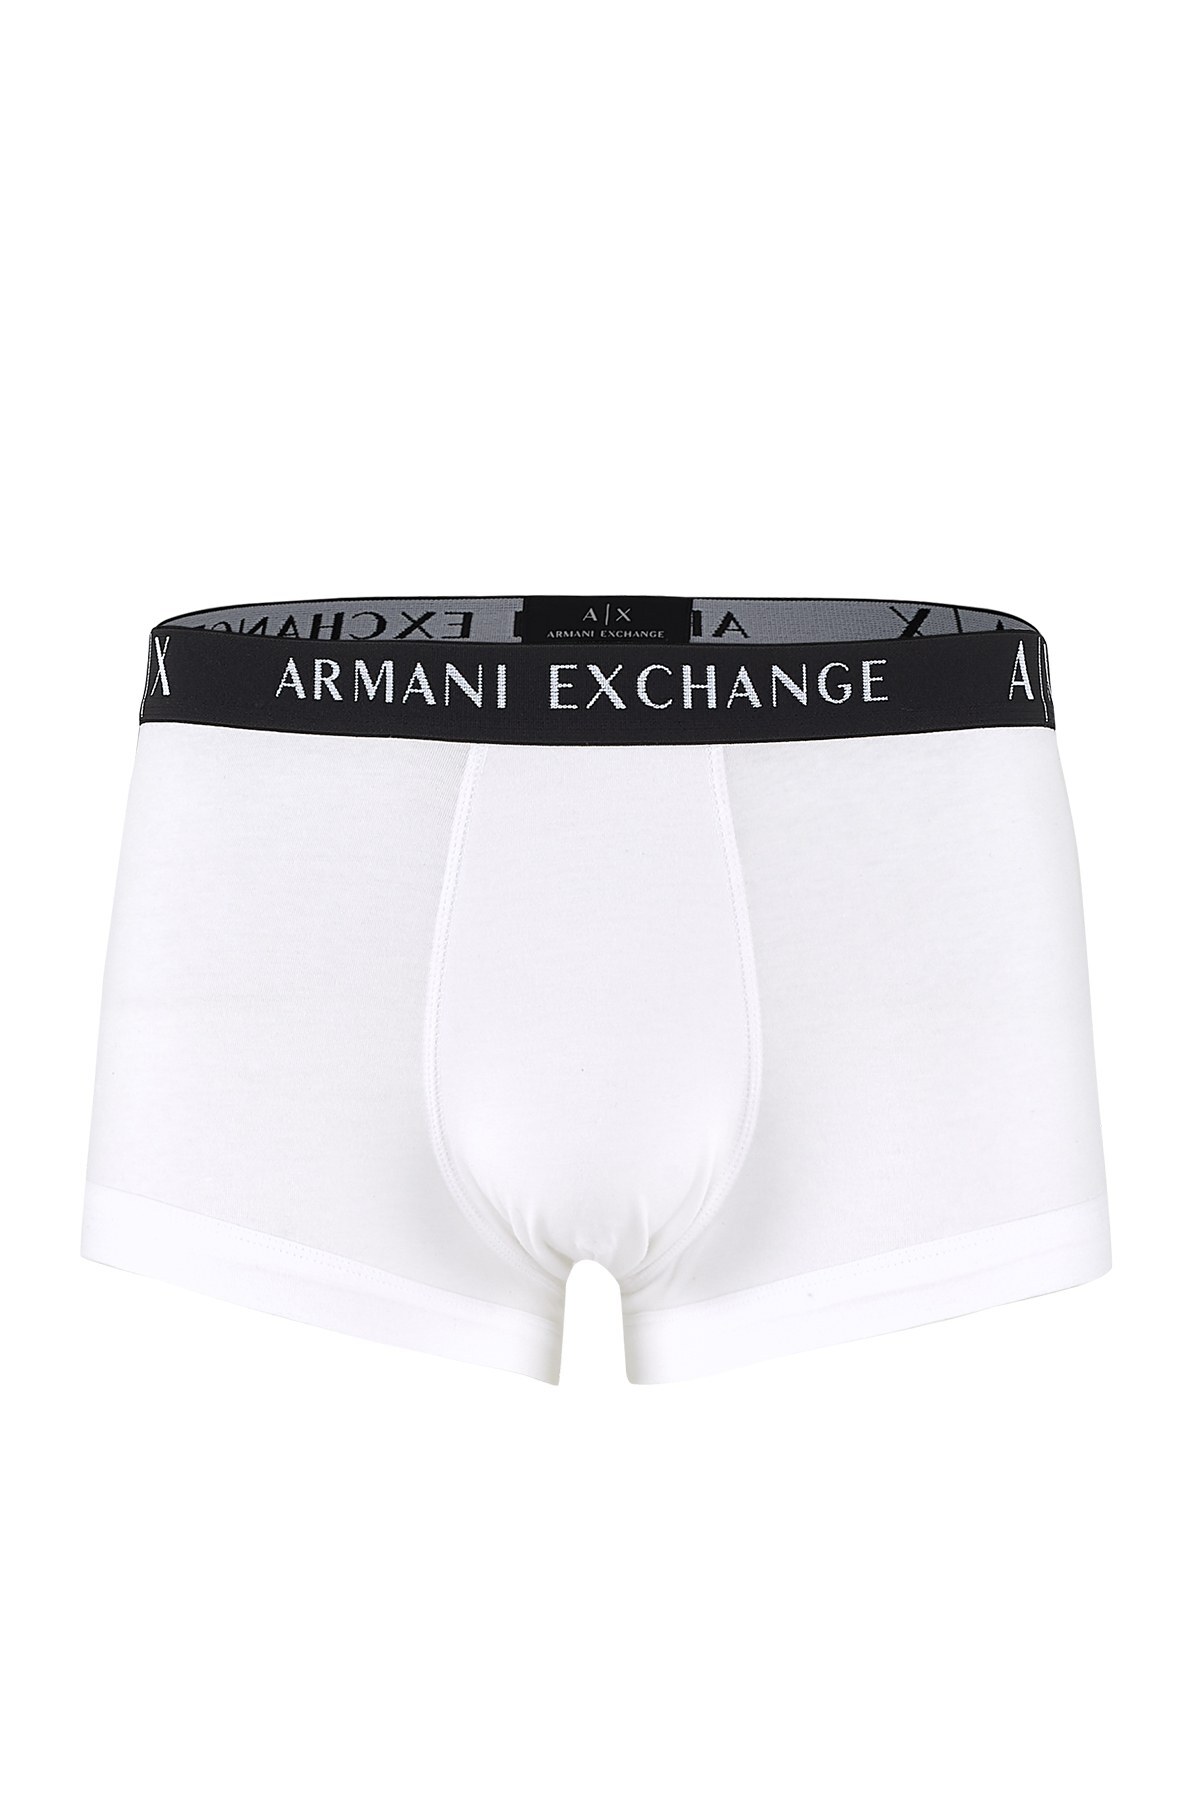 Armani Exchange 3 Pack Erkek Boxer 956000 CC282 49920 SİYAH-BEYAZ-GRİ